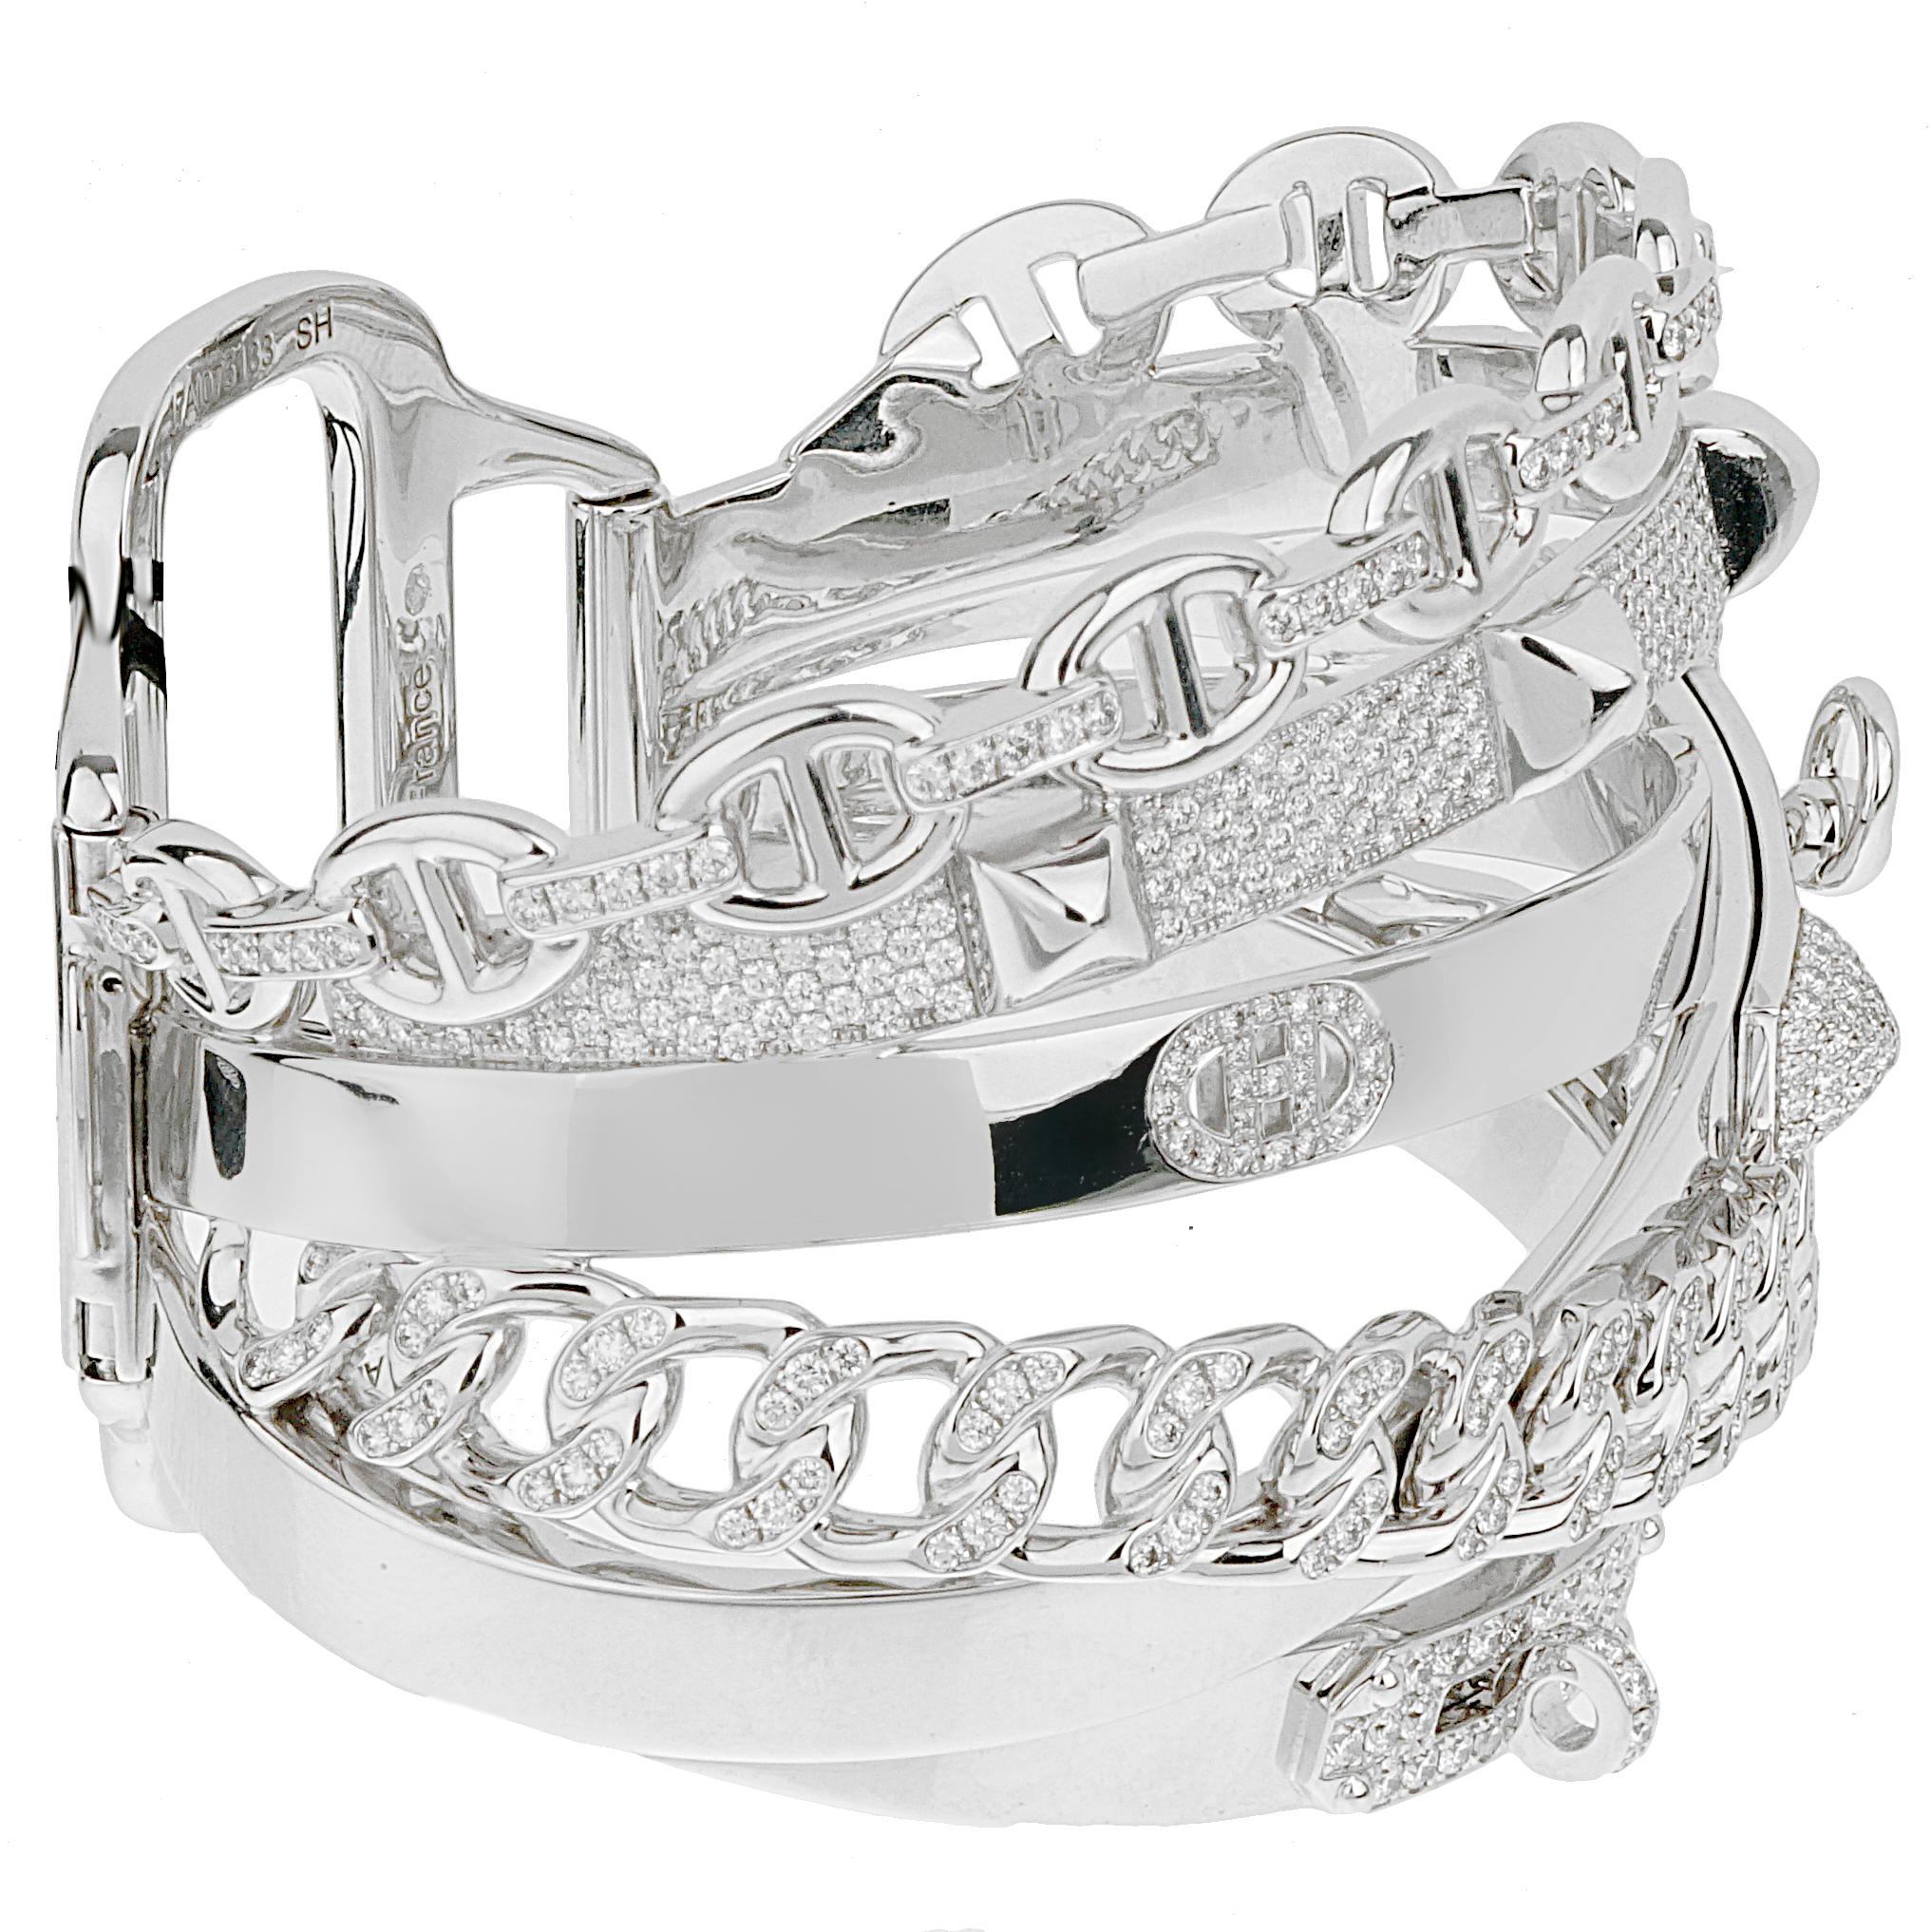 Confectionné de main de maître en or blanc 18 carats, le bracelet Alchemie présente un design complexe et entrelacé qui symbolise l'équilibre harmonieux de la beauté et de l'art. Les lignes fluides et les courbes délicates du bracelet évoquent un